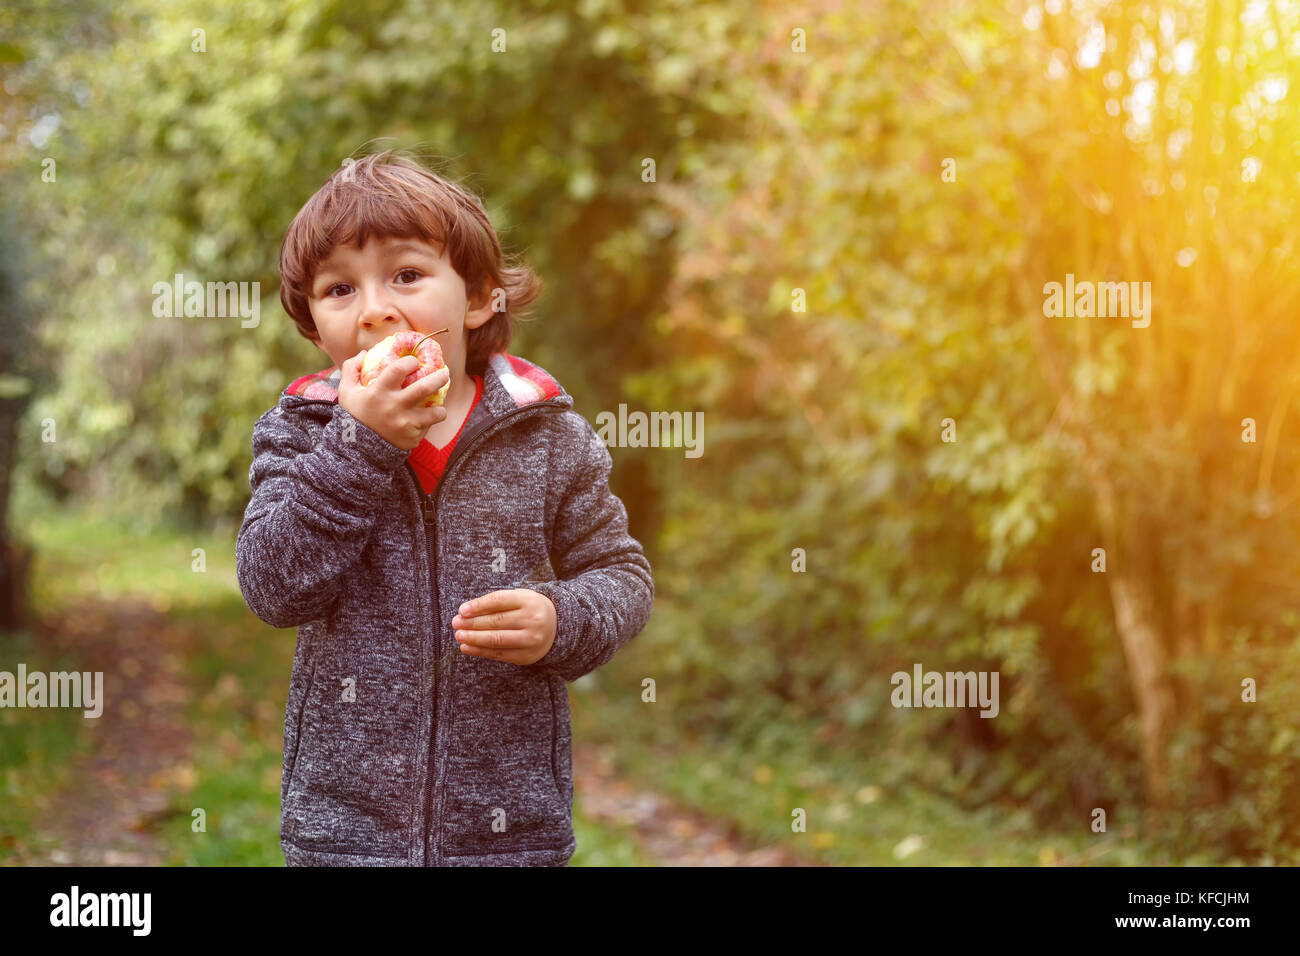 Little Boy bambino kid mangiare frutta apple outdoor autunno autunno copyspace natura giardino all'aperto Foto Stock